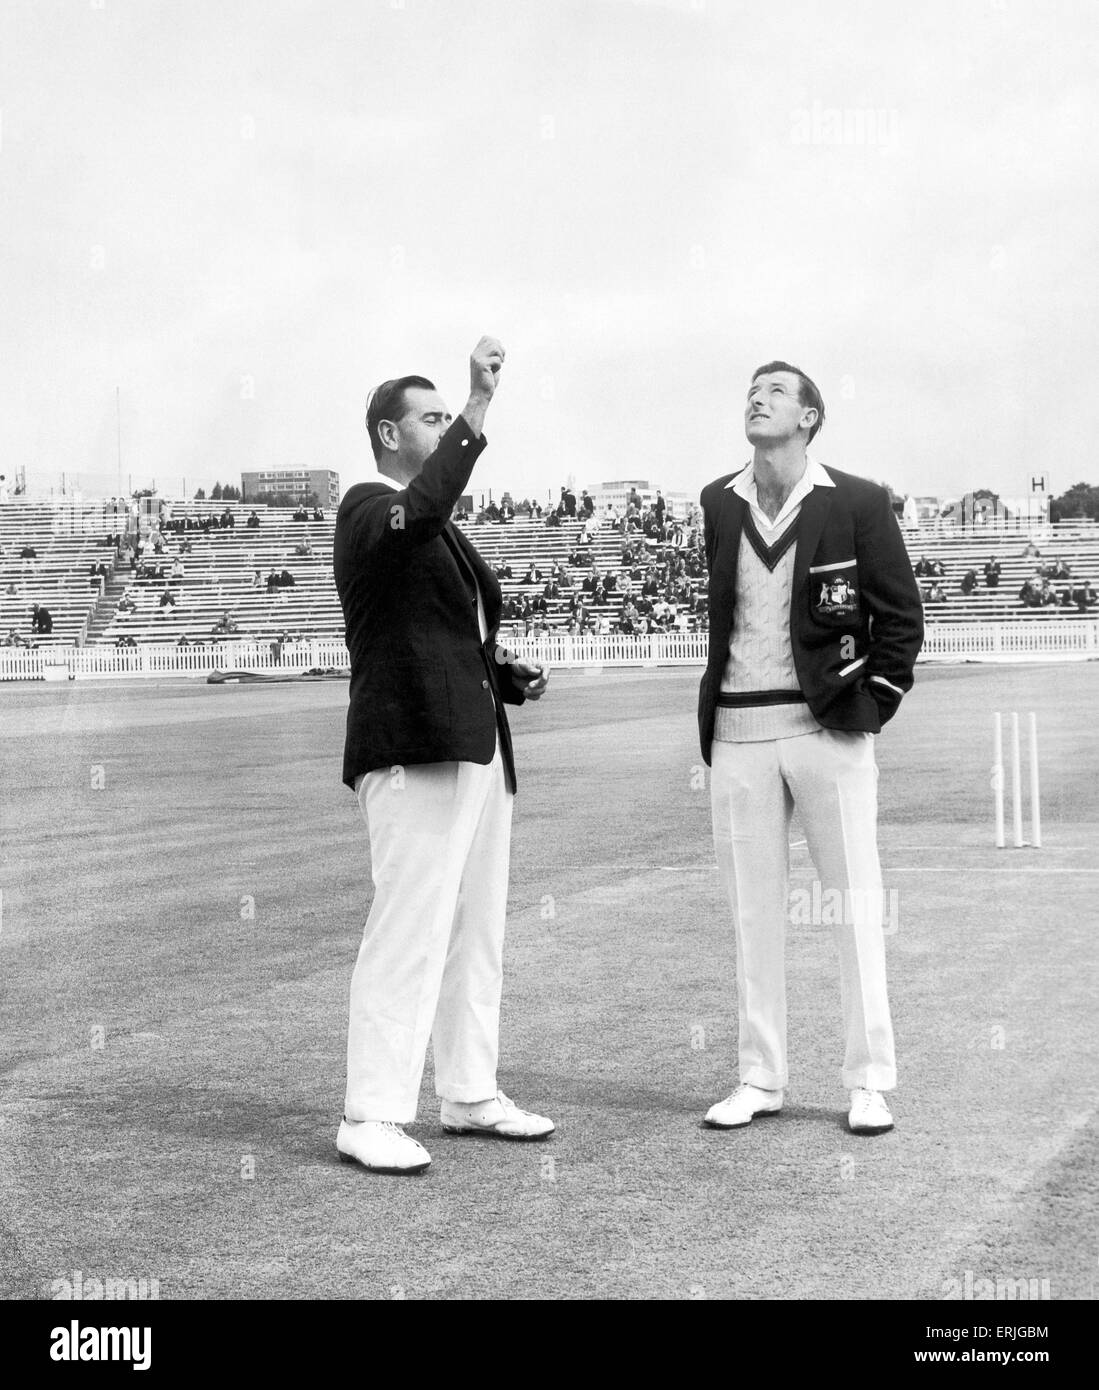 Australische Cricket-Tour von England für die Asche. England V Australien 3. Test bei Edgbaston. Colin Cowdrey Glück hält, wie er den Wurf gegen Australien Kapitän Bill Lawry Lbefore das Spiel gewinnt. 12. Juli 1968. Stockfoto